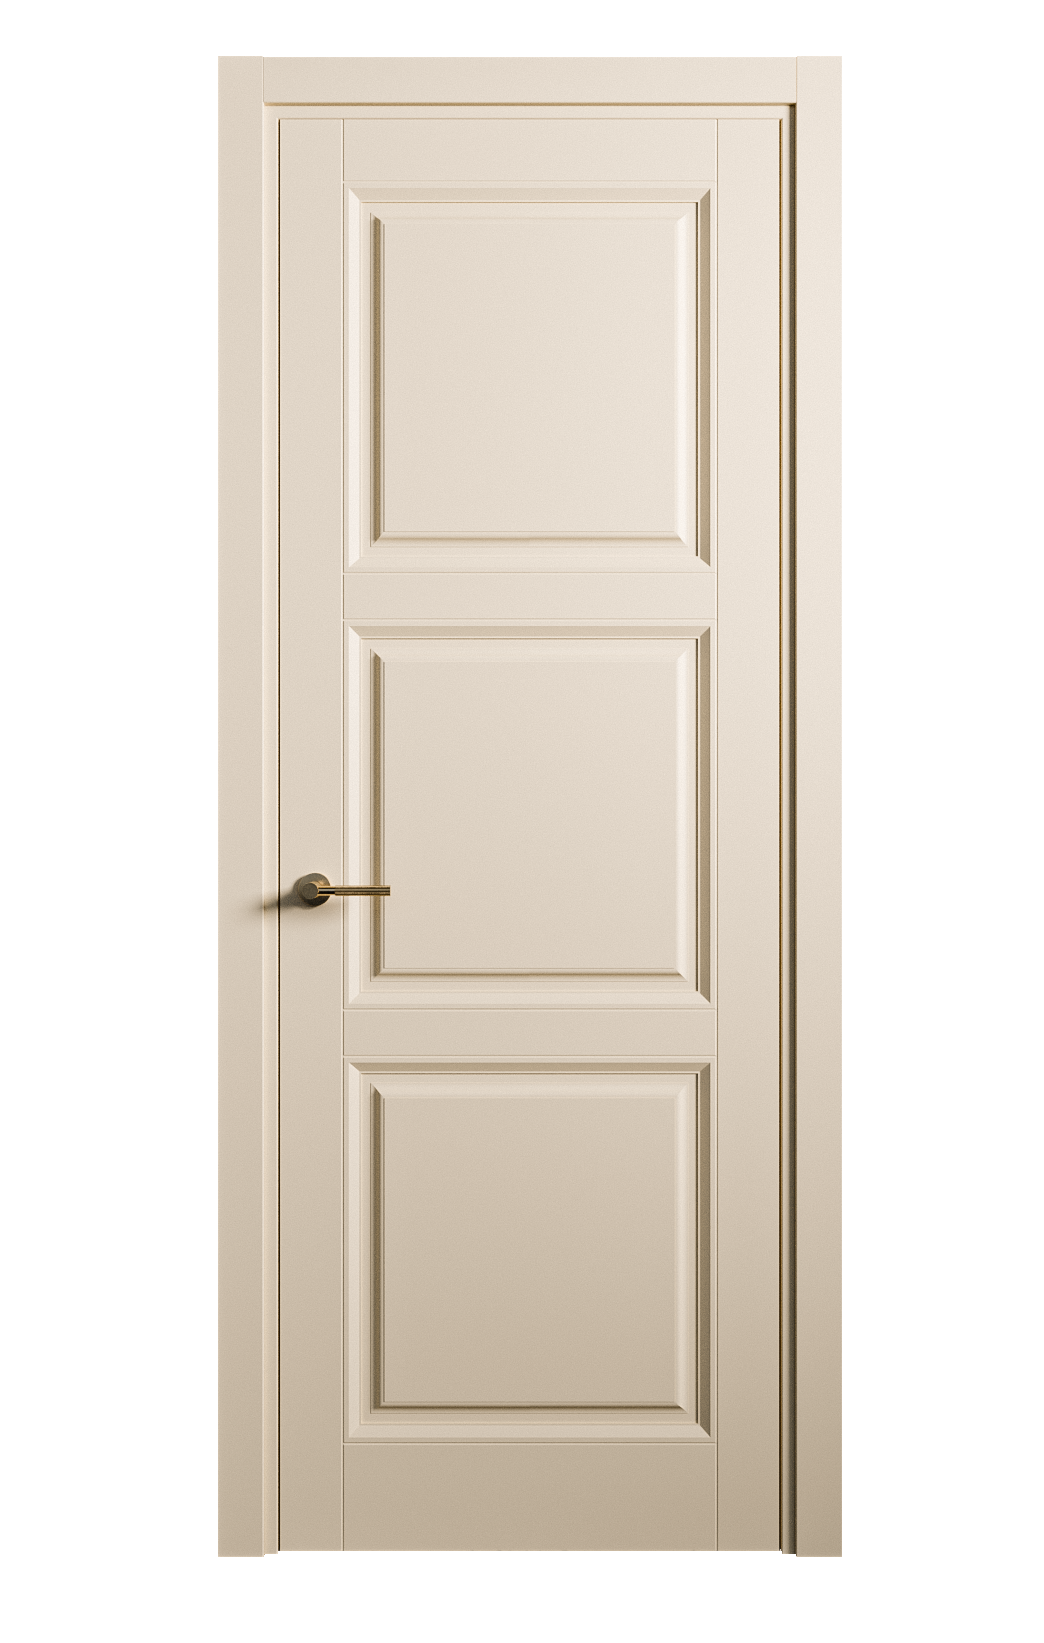 Межкомнатная дверь Venezia-3 глухая эмаль ral 1015 25763